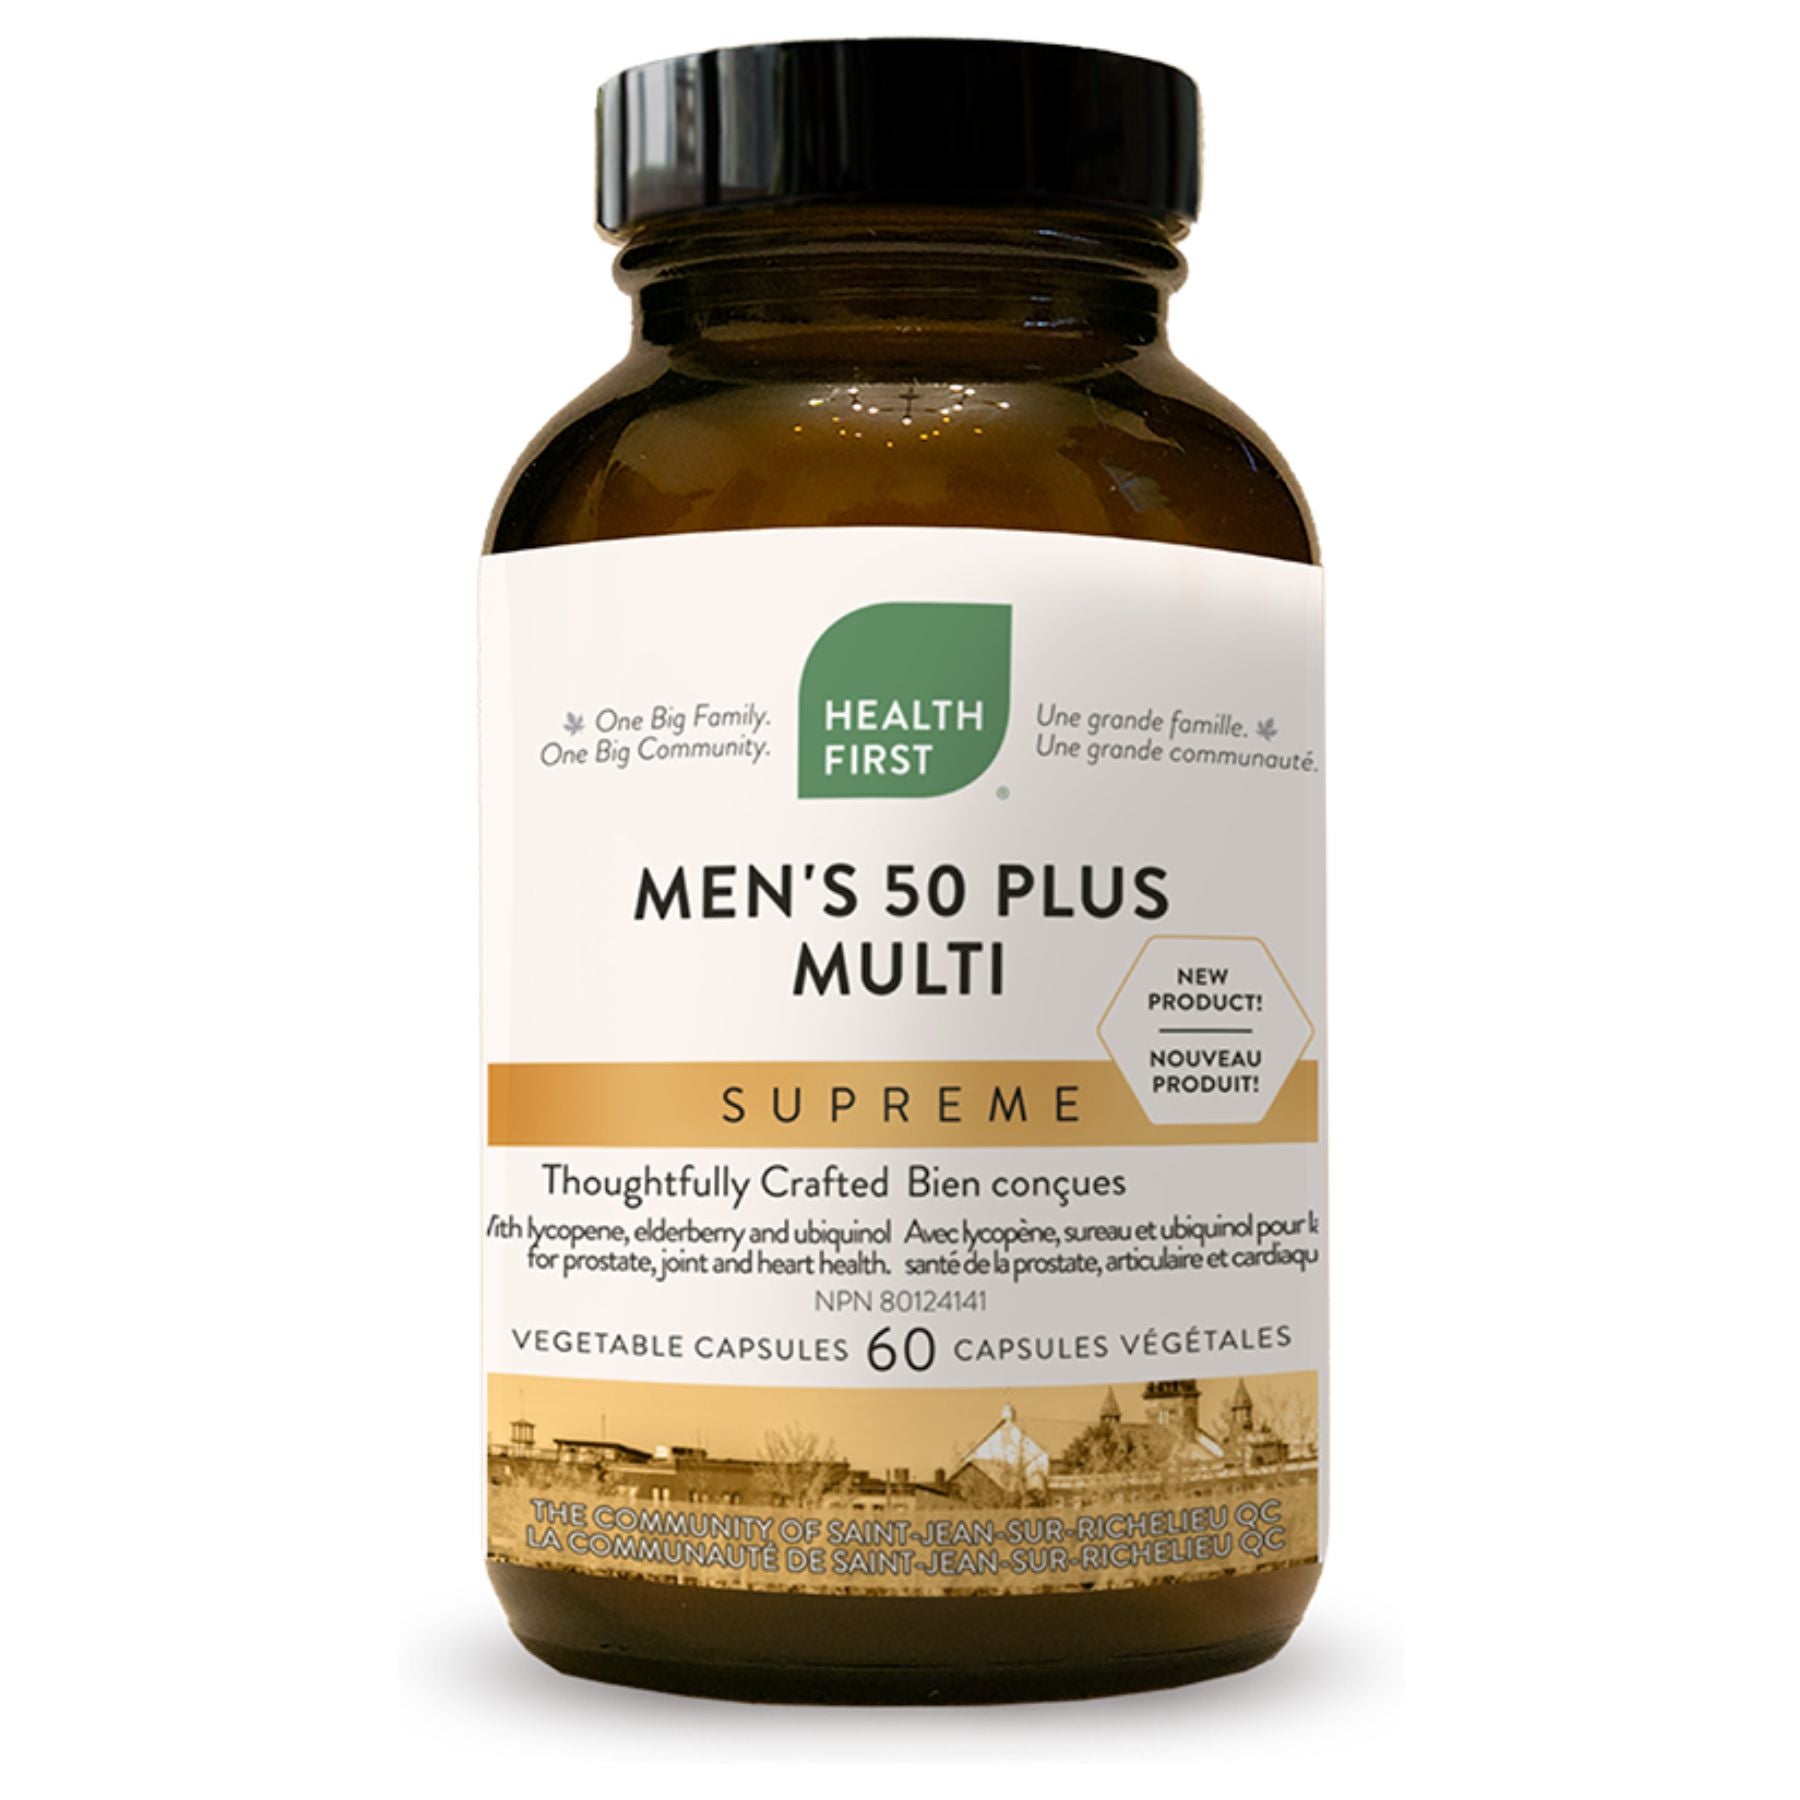 Health First Men's 50 Plus Multi Supreme 60s